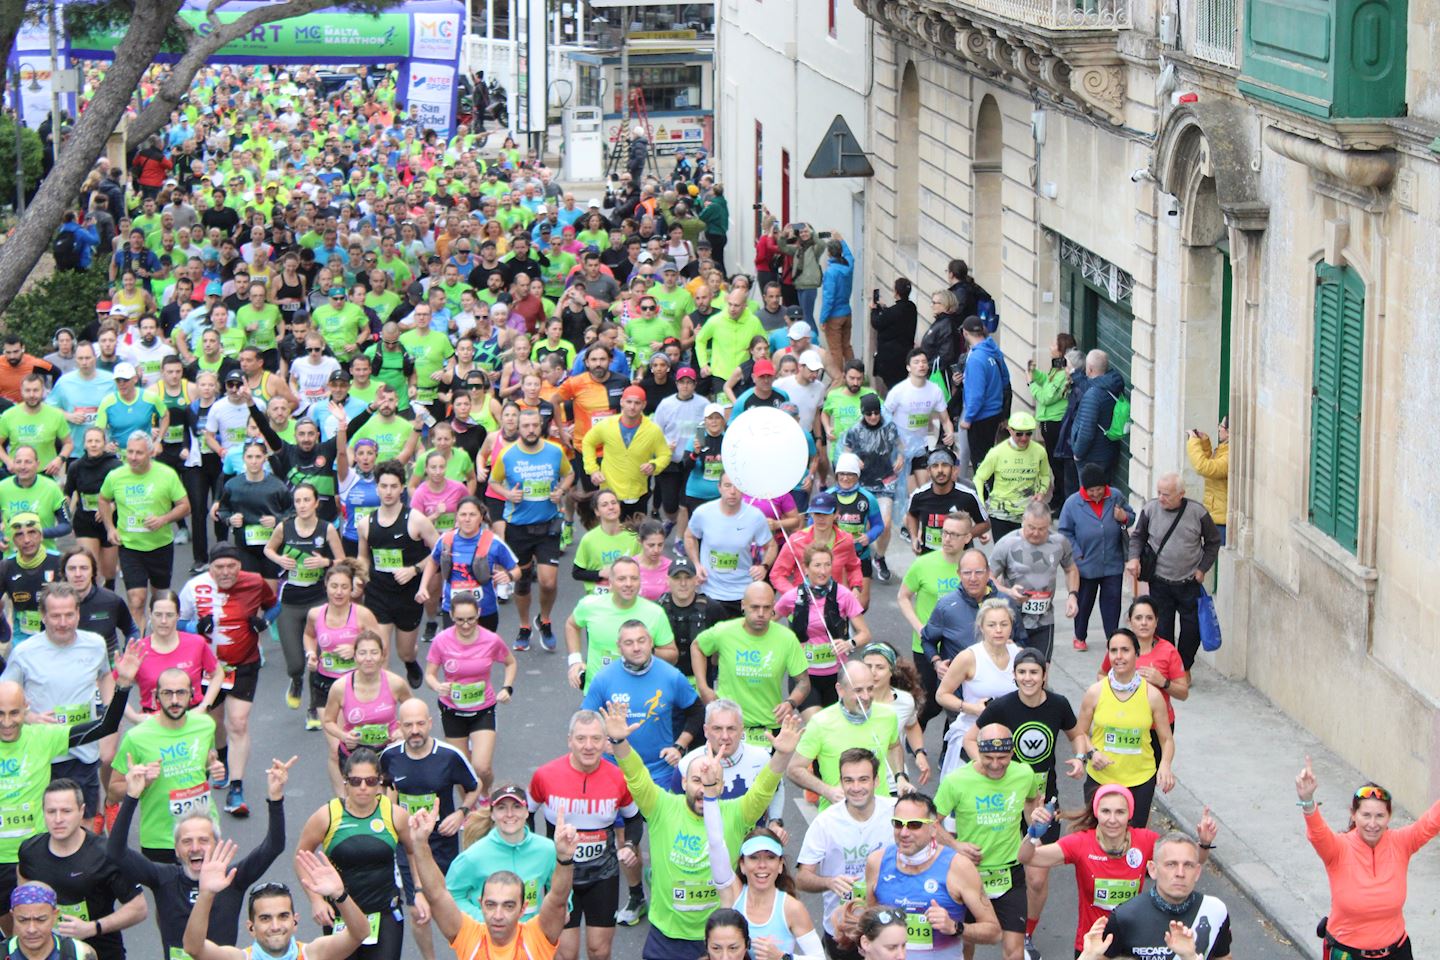 malta marathon